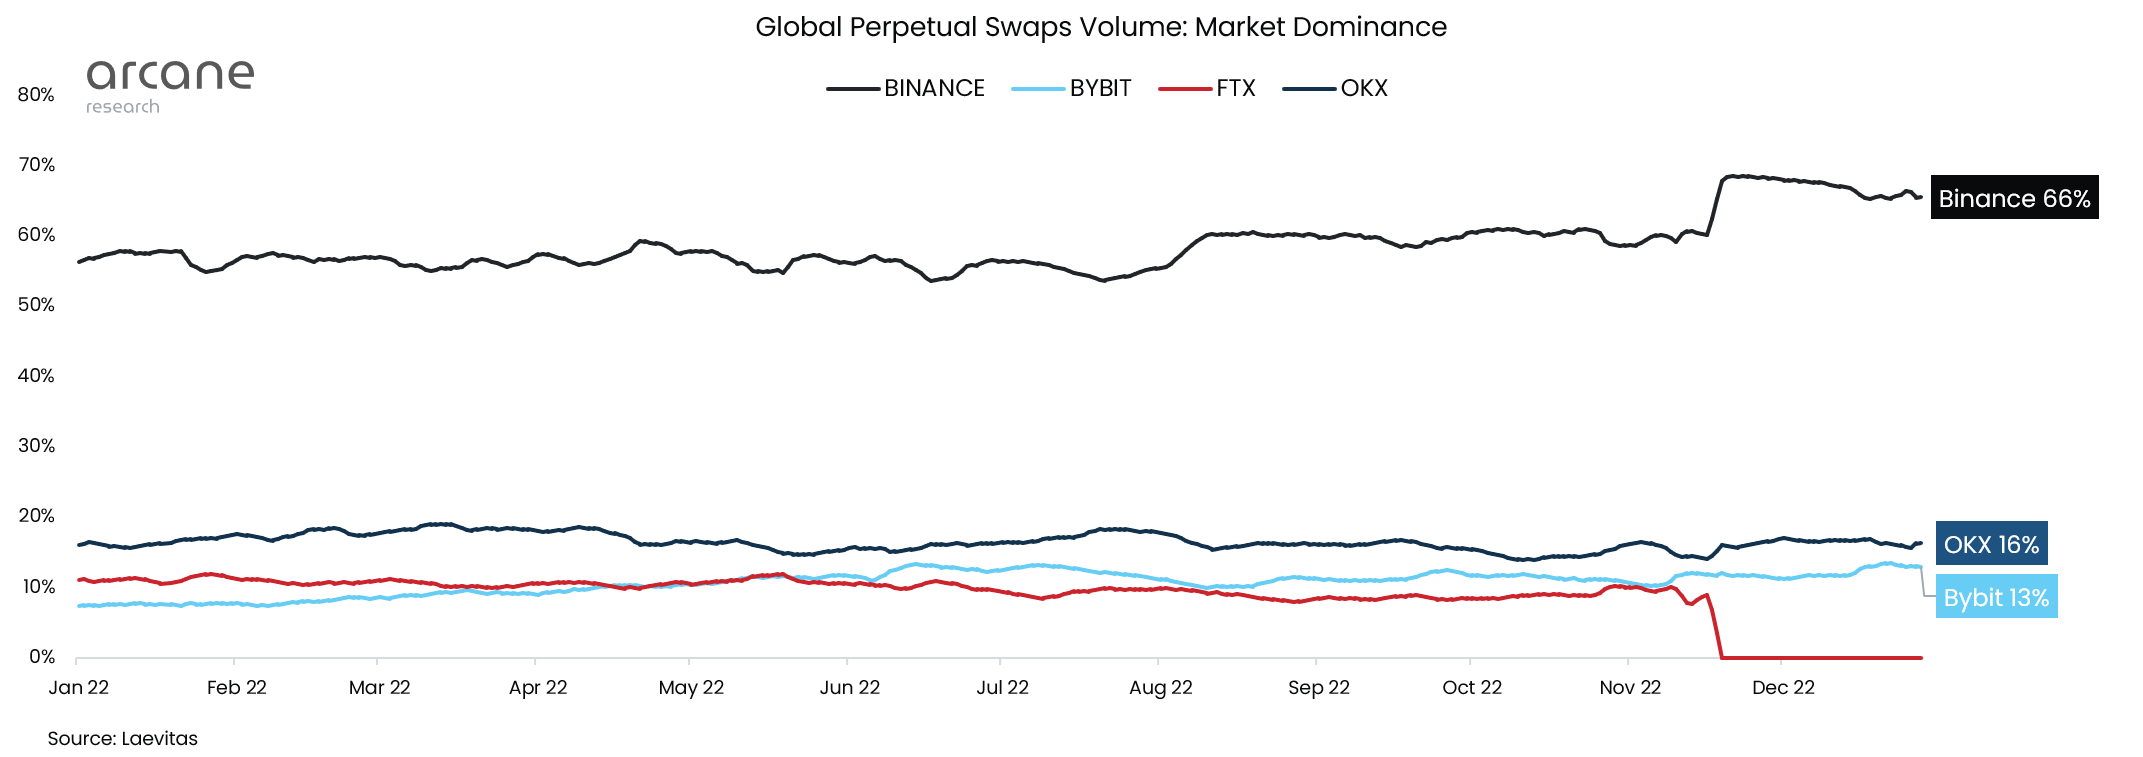 global perpetual swaps volume